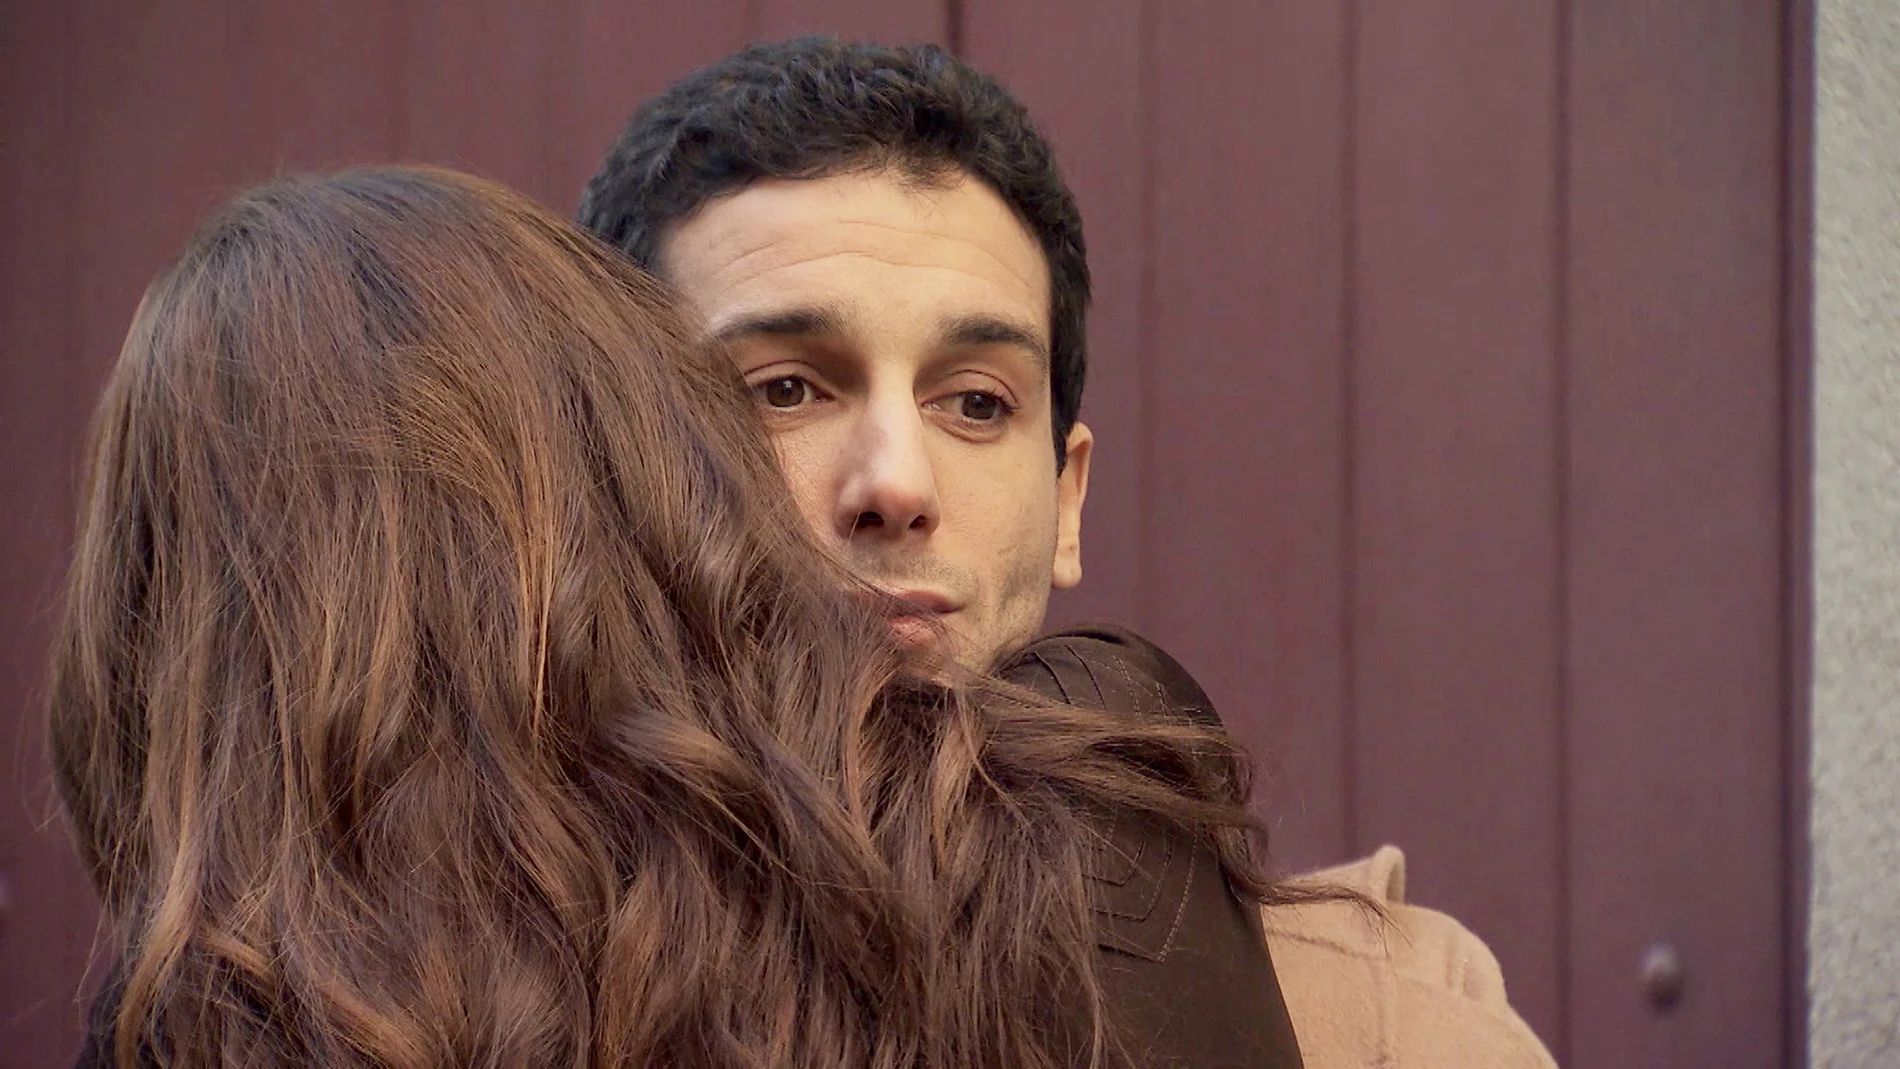 María se reconcilia con Ignacio: "Eres una persona muy importante en mi vida"